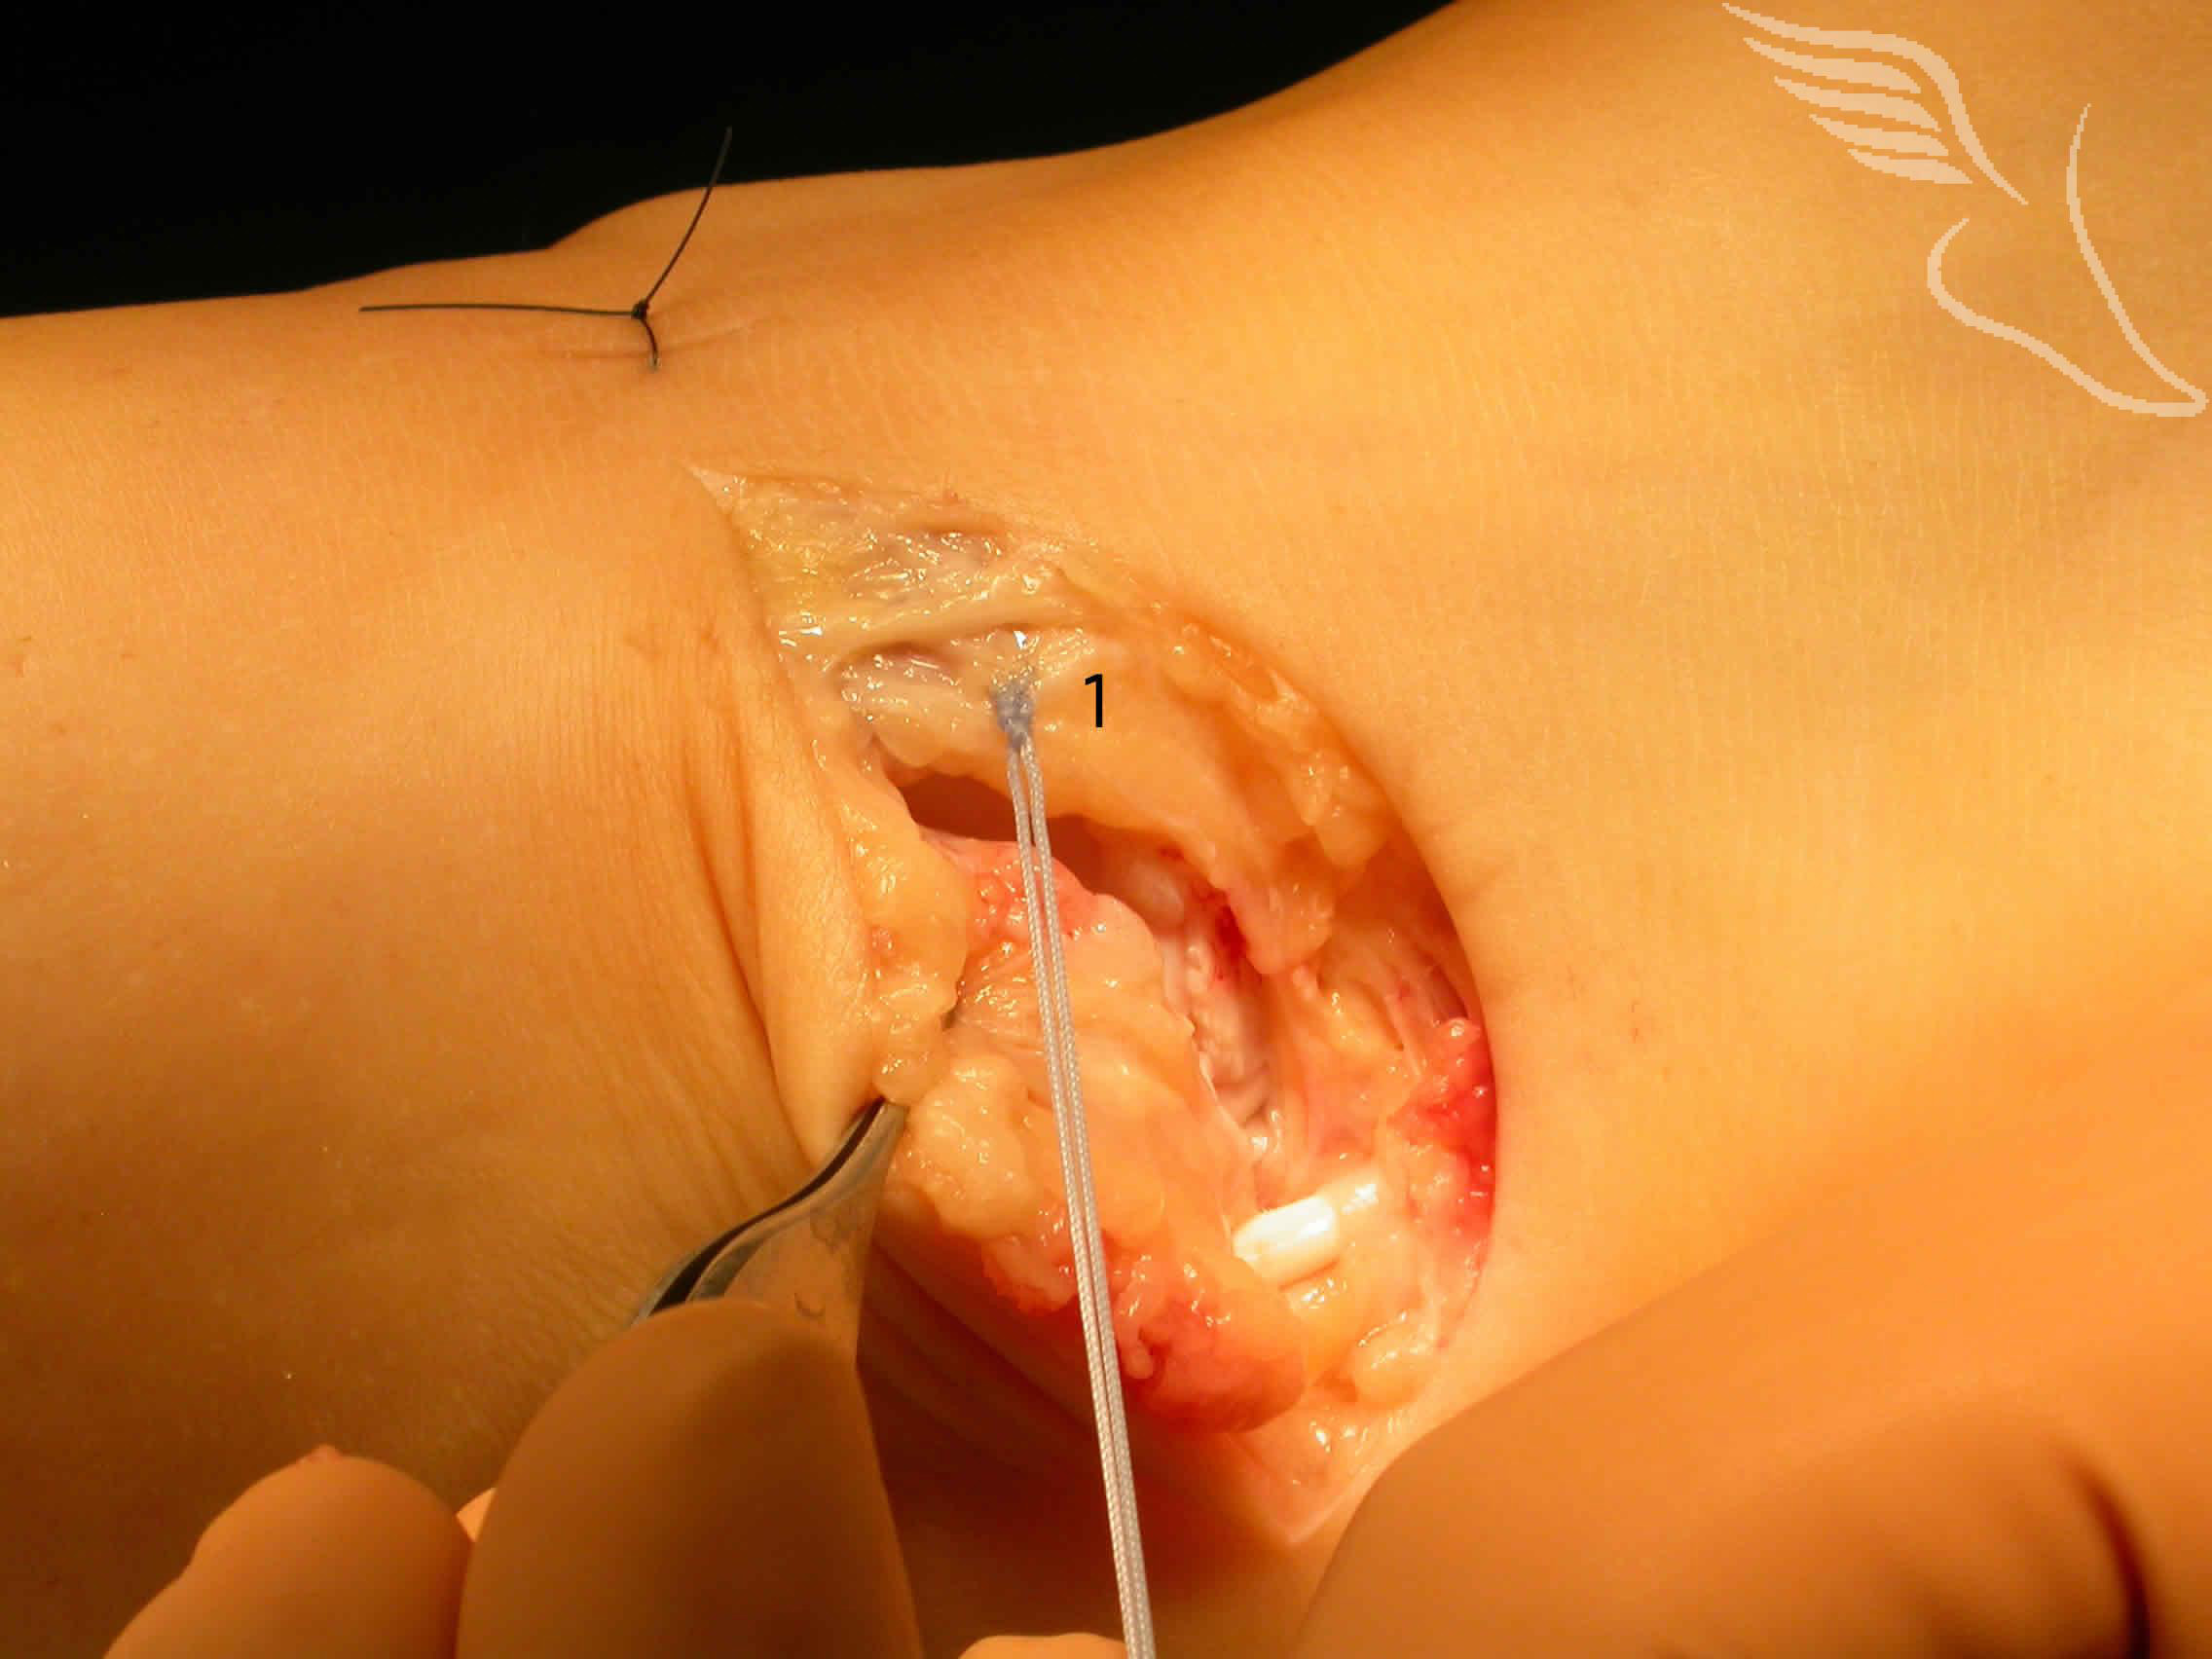 birmingham-ankle-ligament-reconstruction-13